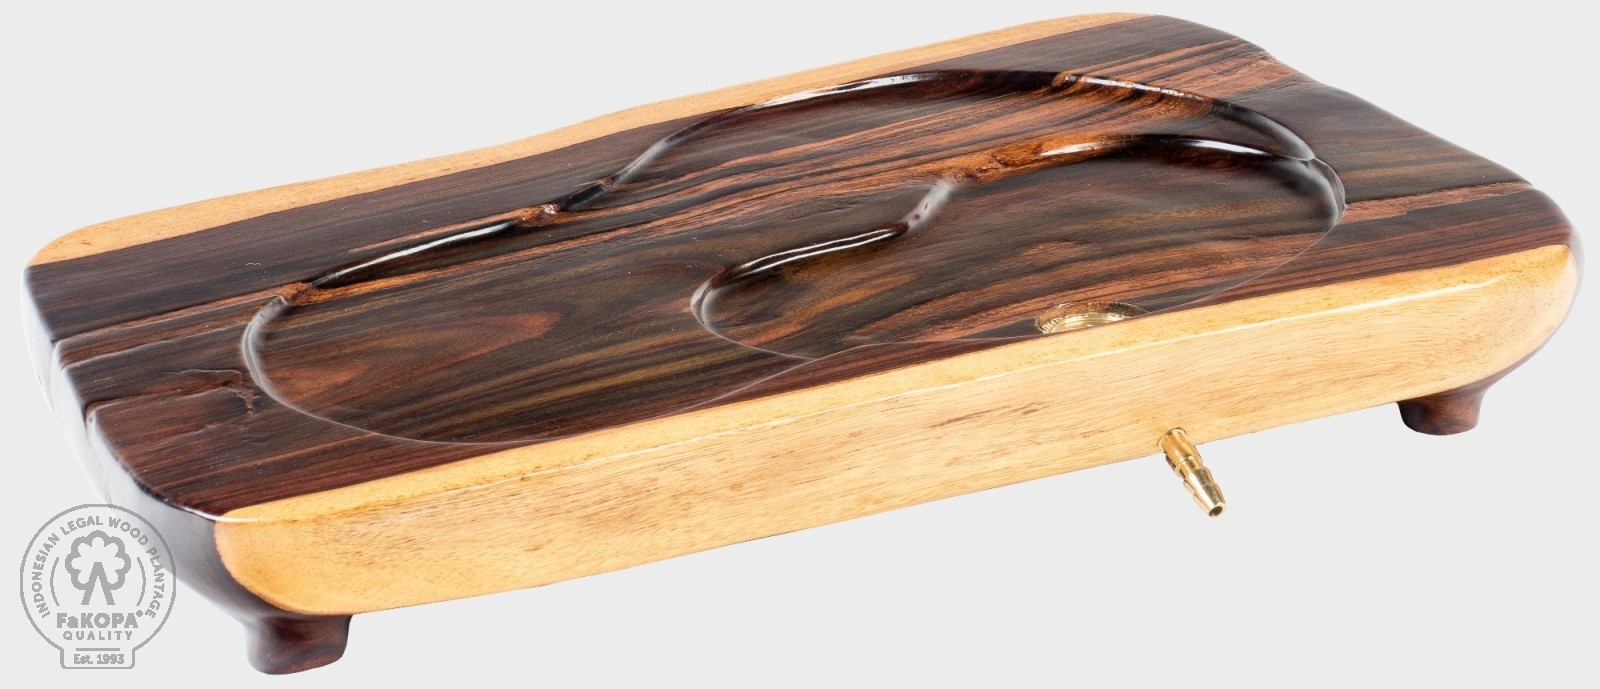 FaKOPA s. r. o. UMI XI - čajové moře z rosewoodu 52 x 31 cm, rosewood